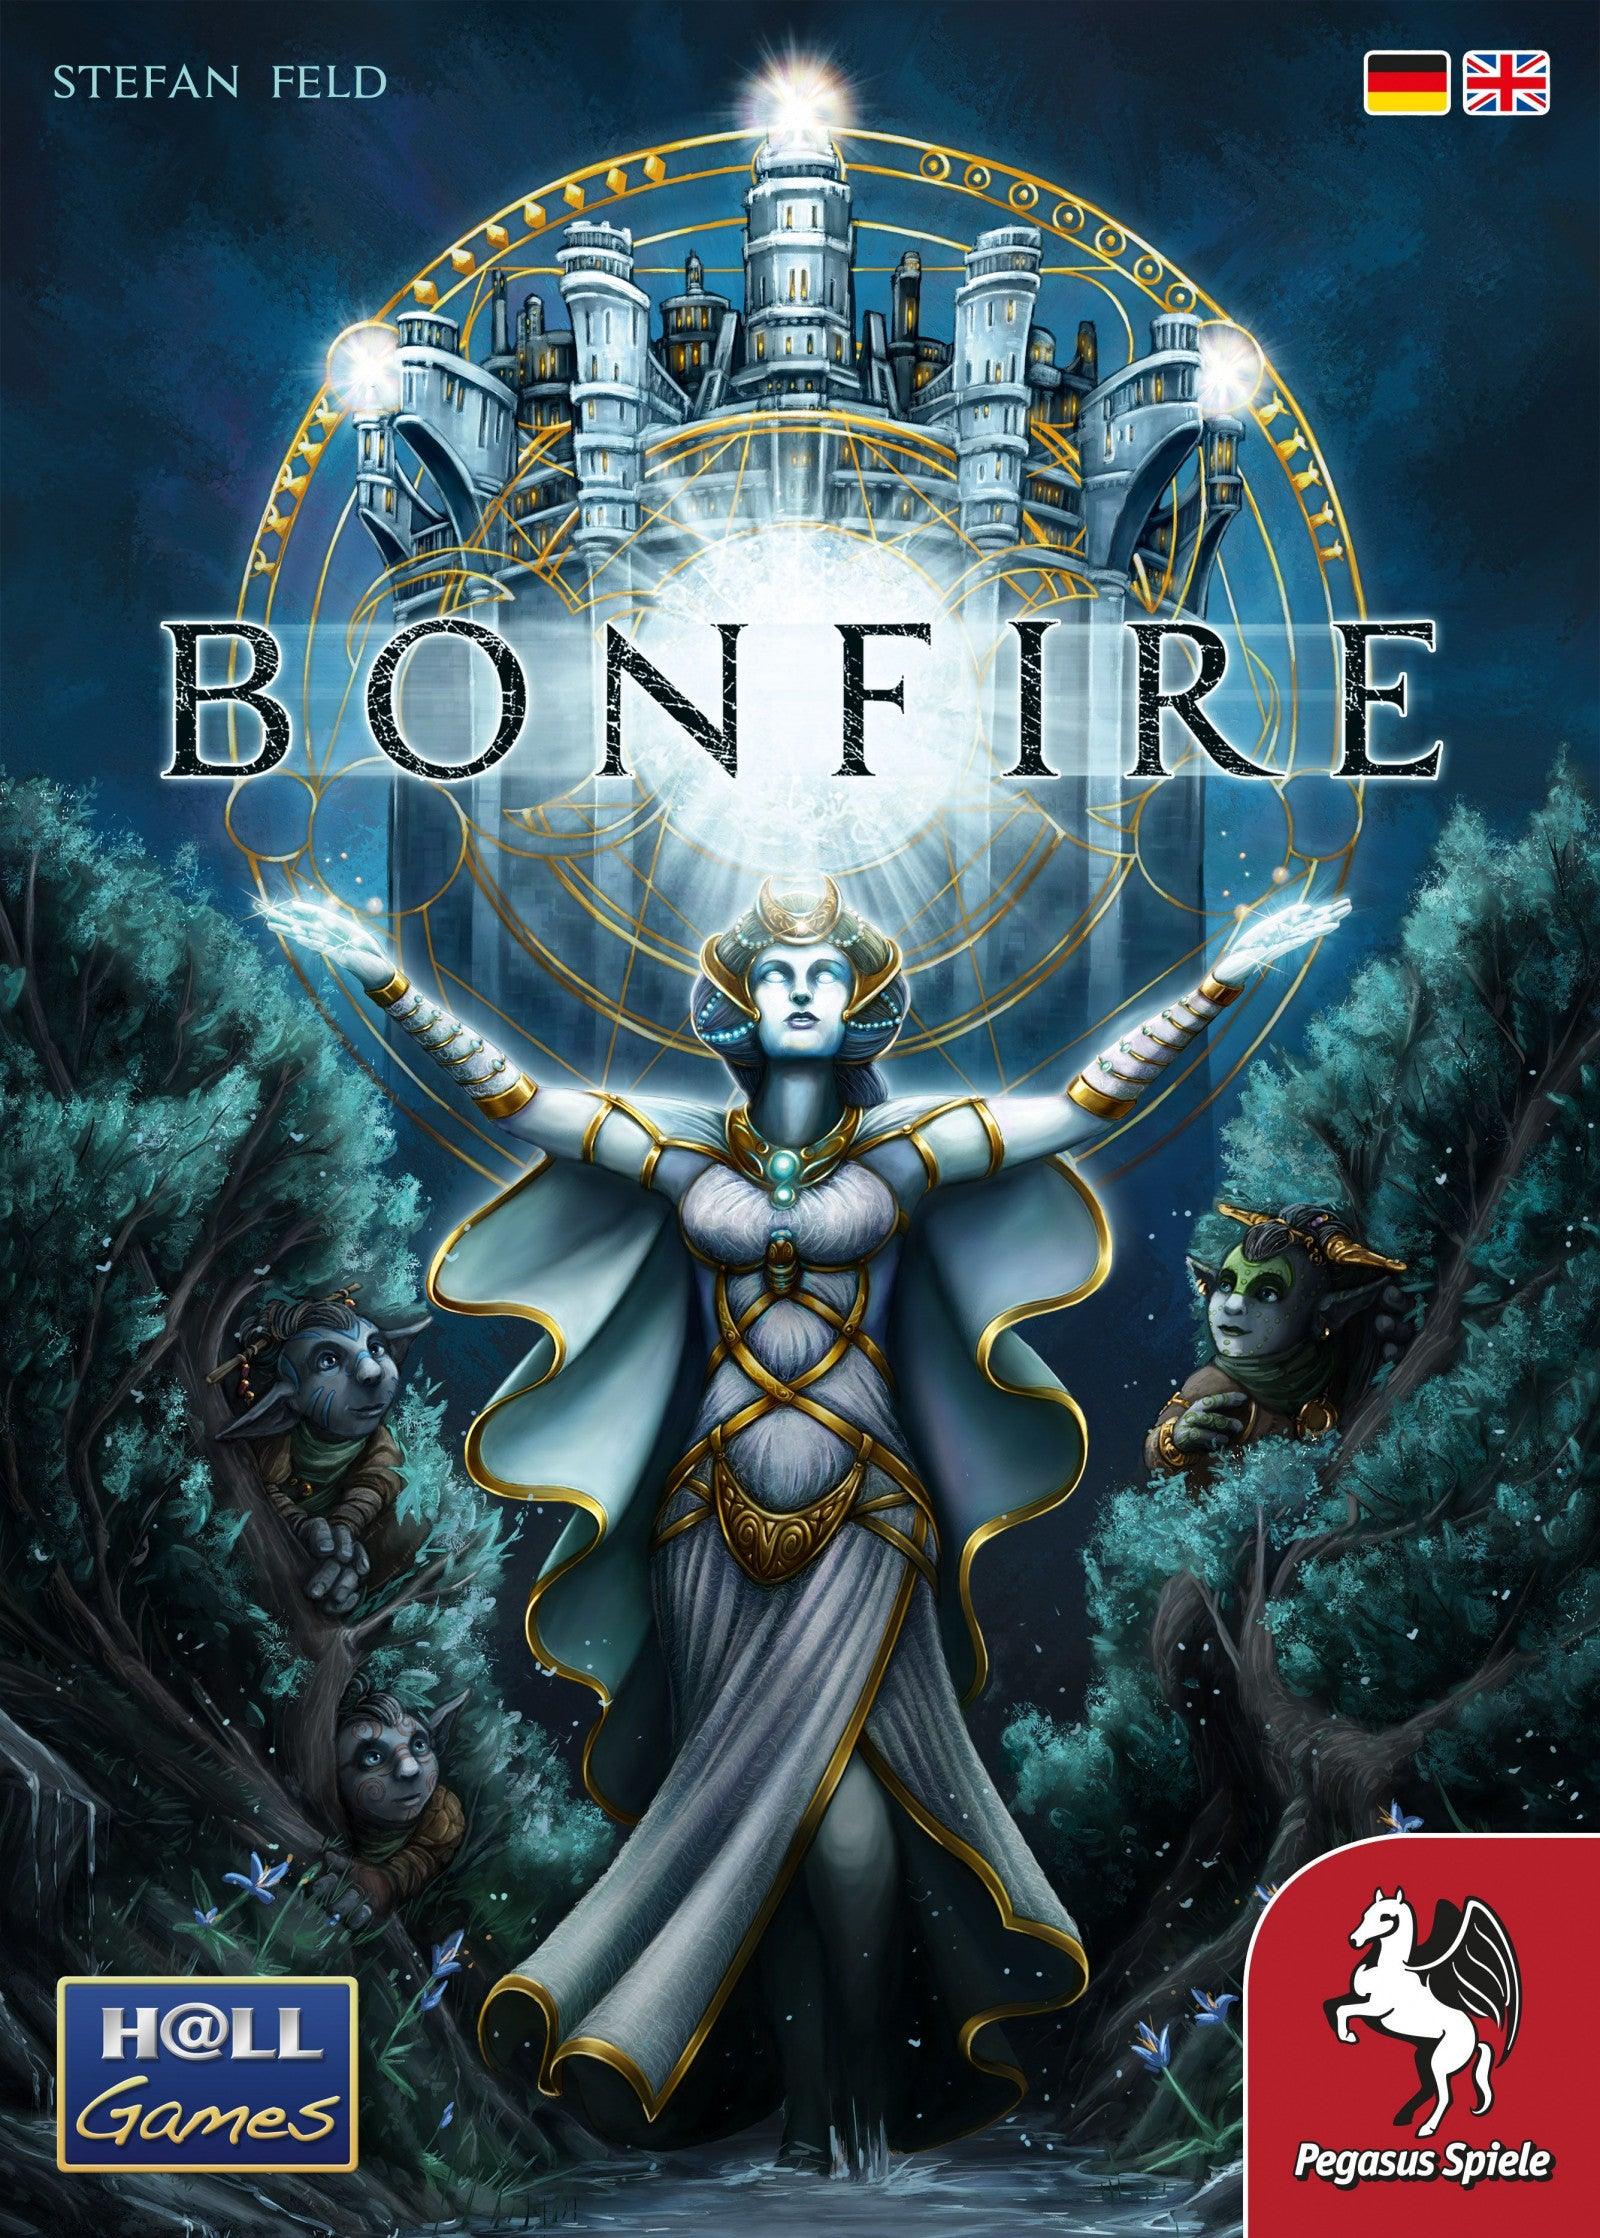 VR-84914 Bonfire - Pegasus Spiele - Titan Pop Culture